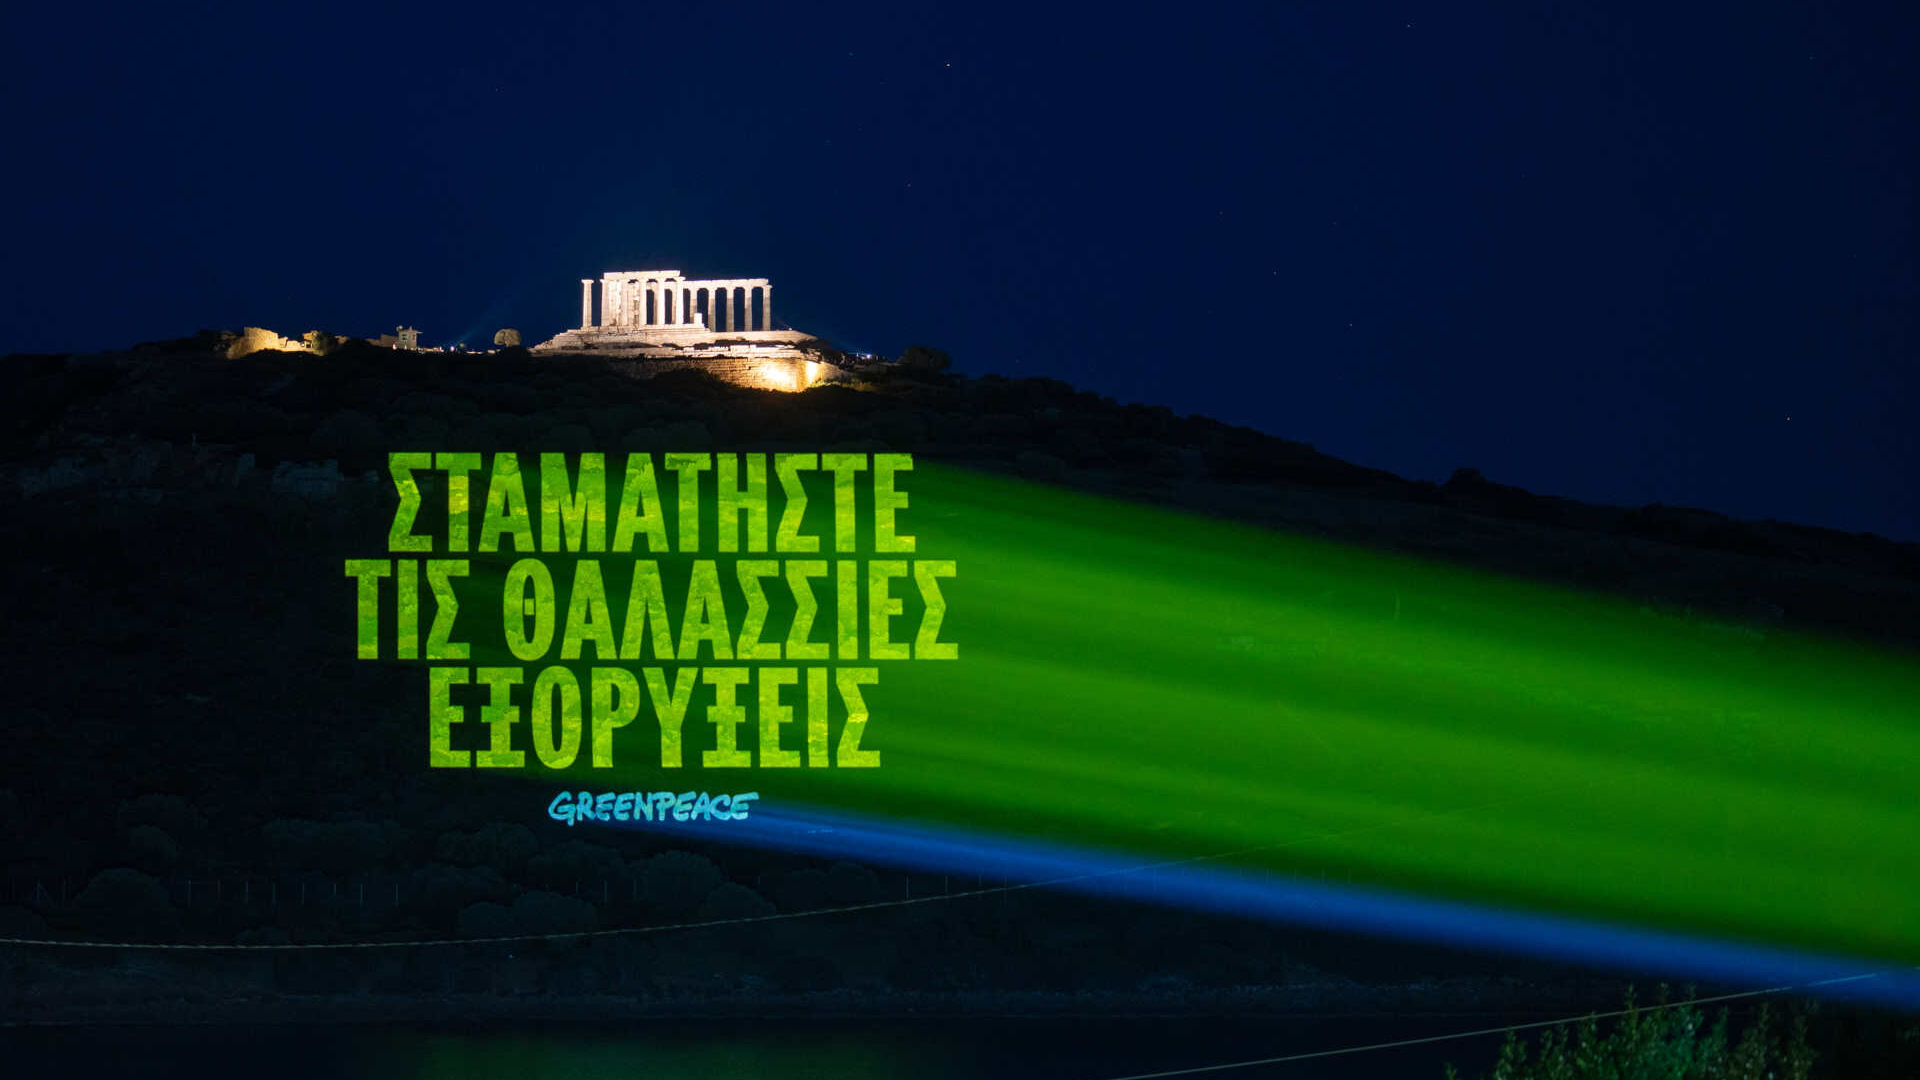 Griechenland: die Nachricht auf Griechisch, die lautet